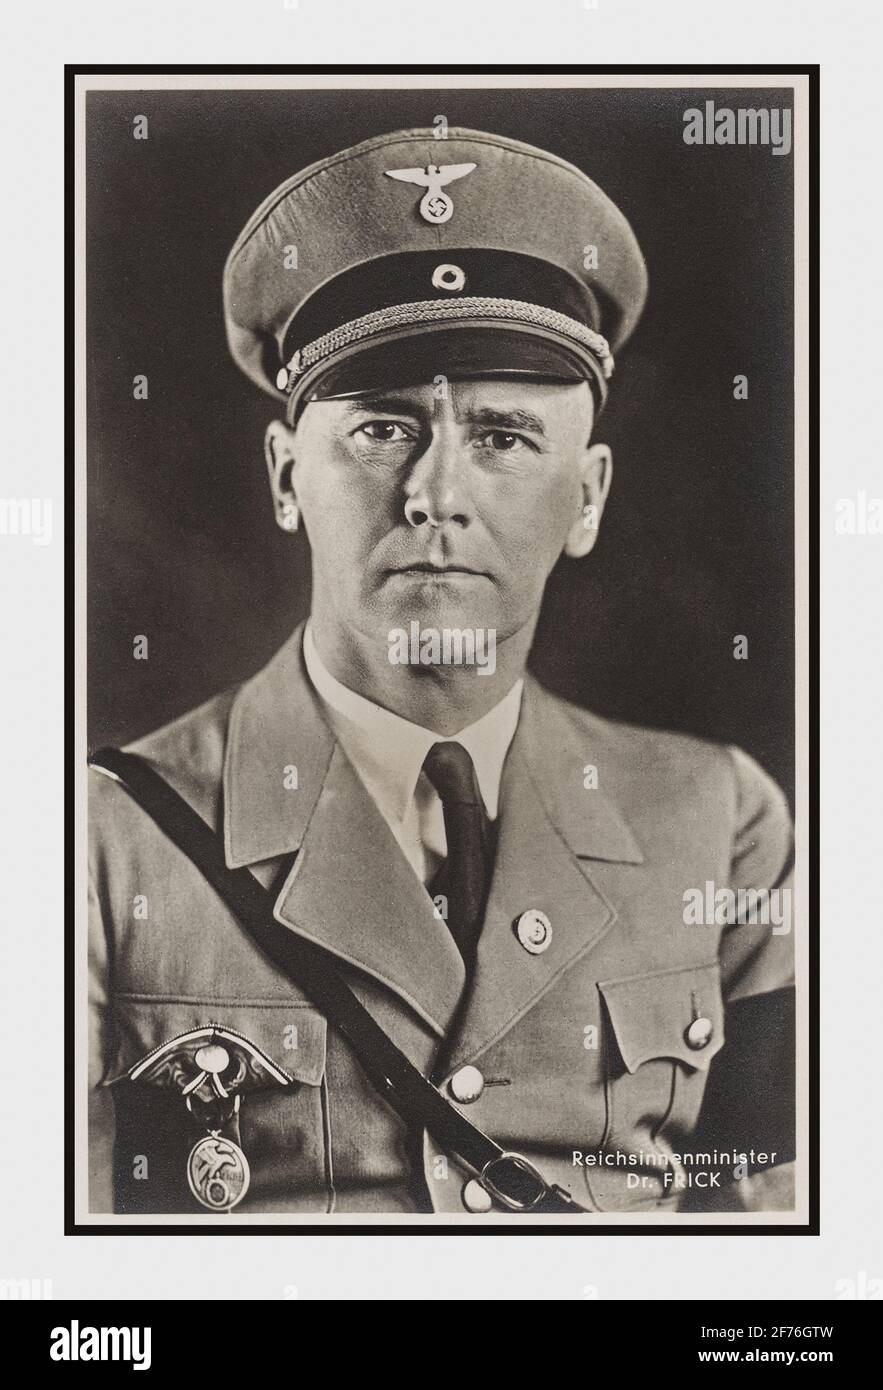 Pendant la Seconde Guerre mondiale, le Dr Frick portrait 'Reichsinnenminister 'membre principal du Parti nazi allemand de la Seconde Guerre mondiale coupable de crimes de guerre et condamné à mort le 1er octobre 1946, pendu à la prison de Nuremberg le 16 octobre. Allemagne Banque D'Images